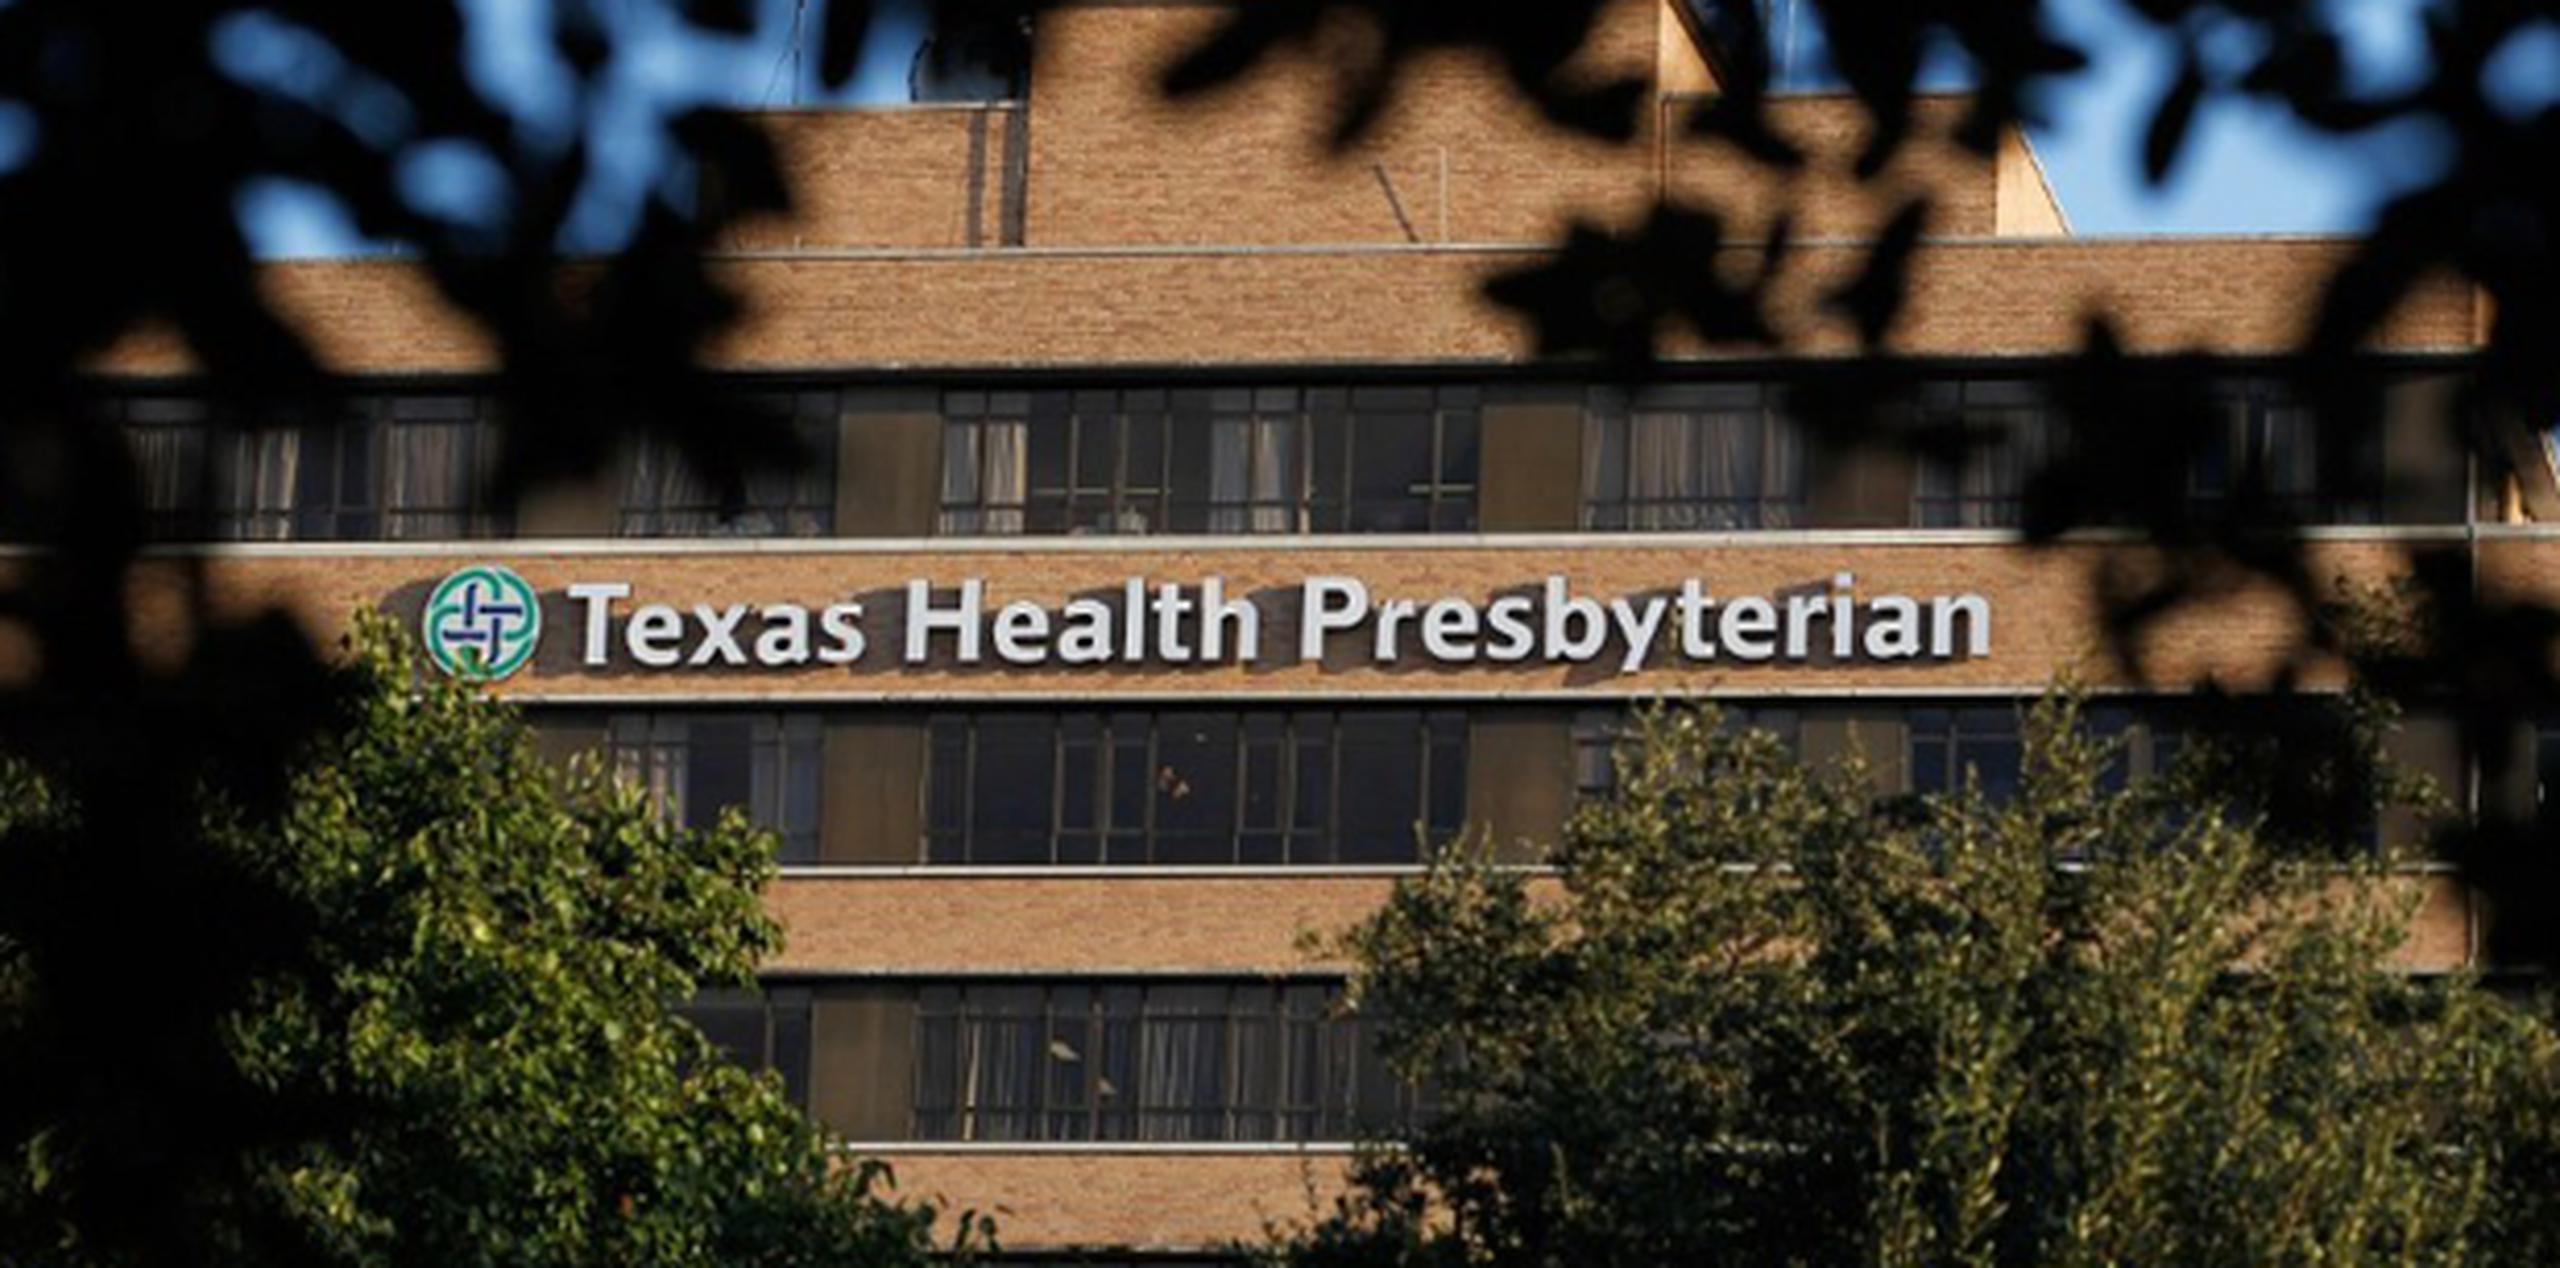 El hombre, que no ha sido identificado, tiene pronóstico grave y está en aislamiento en el Hospital Presbiteriano de Salud de Texas desde el domingo, indicaron el martes las autoridades. (AP)